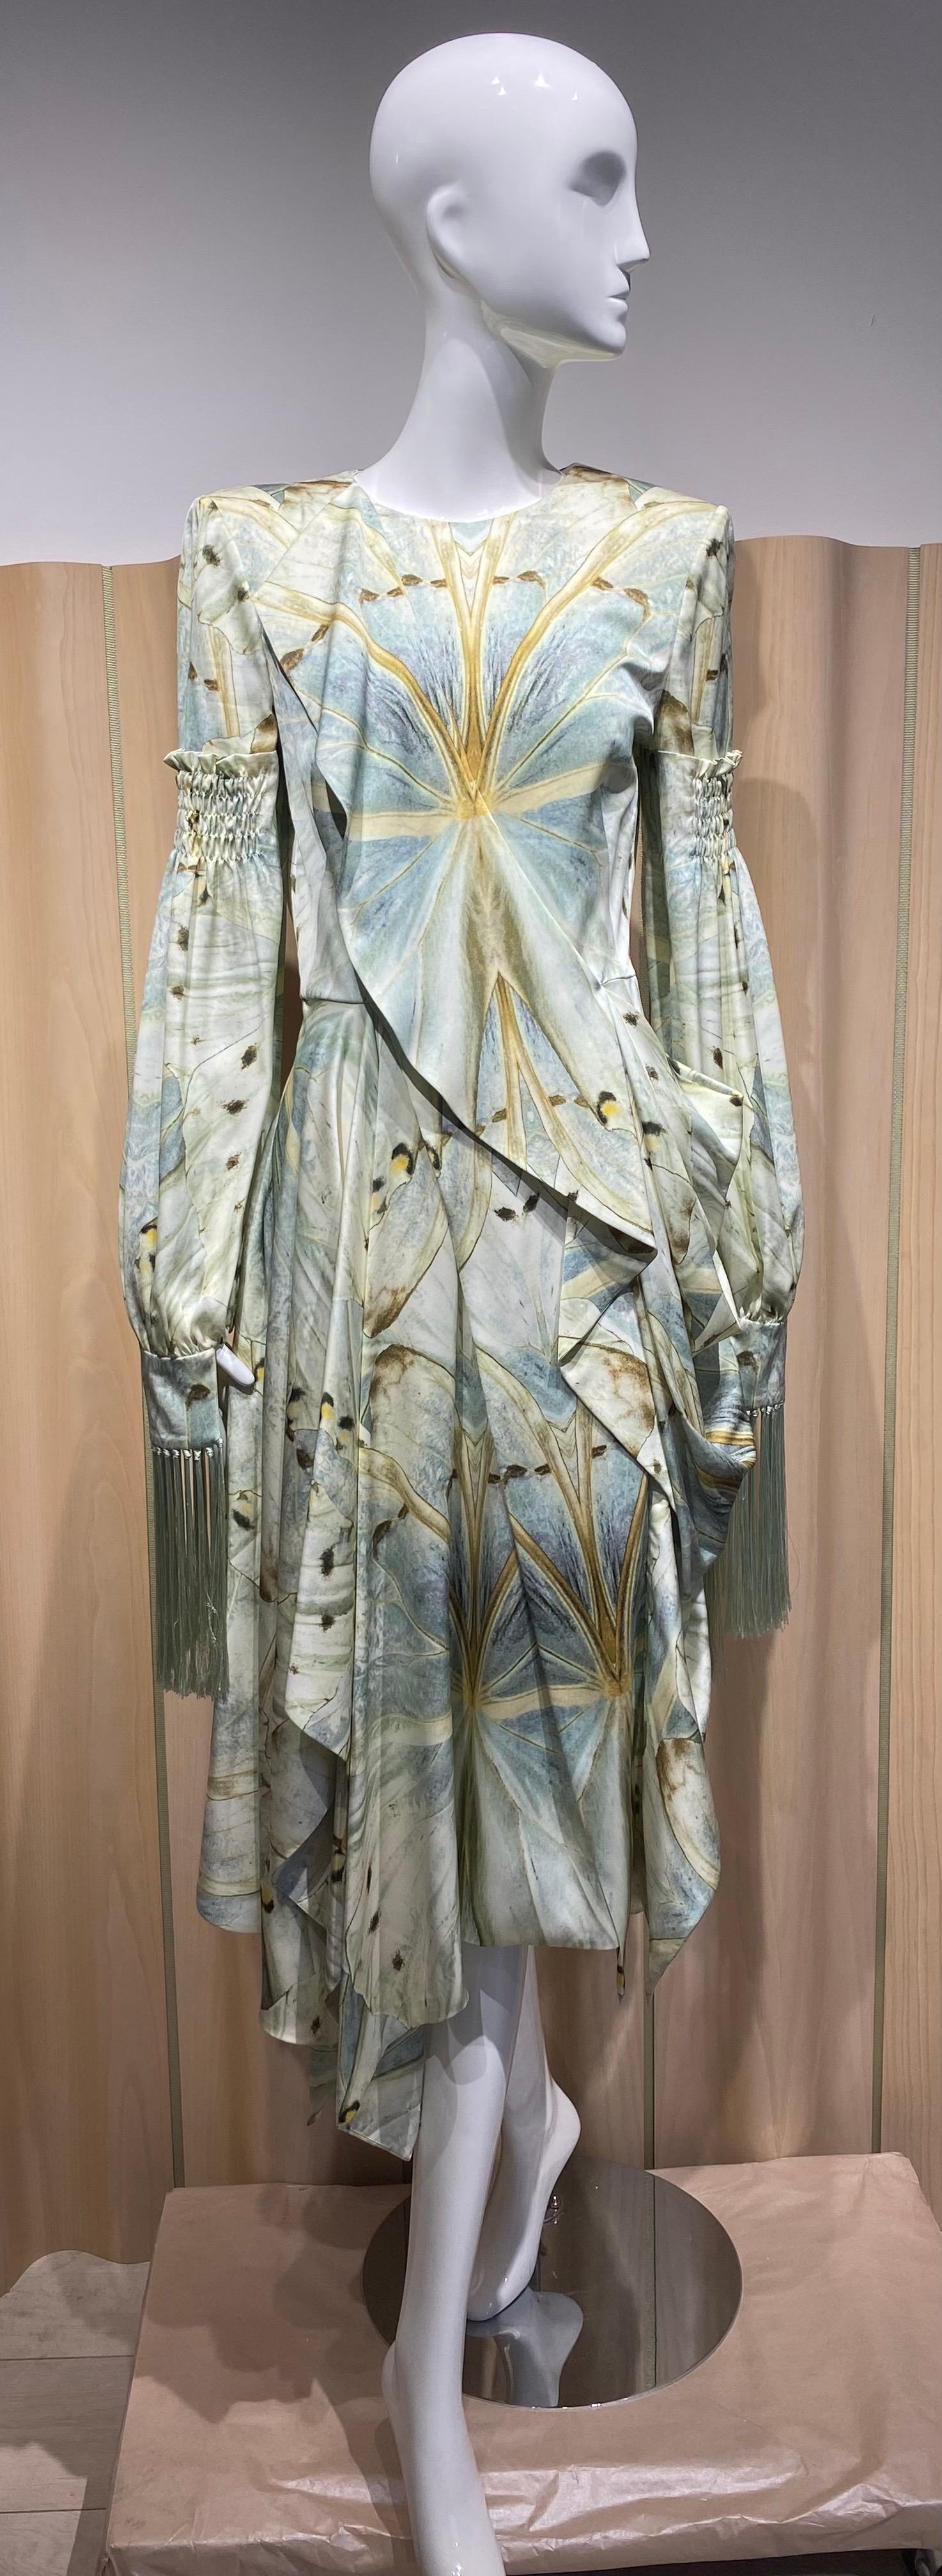 Alexander McQueen Robe imprimée en soie à manches longues en vert clair et marron de l'automne 2018.
- manches à pompon
Taille moyenne 6/8 voir mesures :
Buste 36 pouces
taille 28 pouces/ longueur de la robe 54